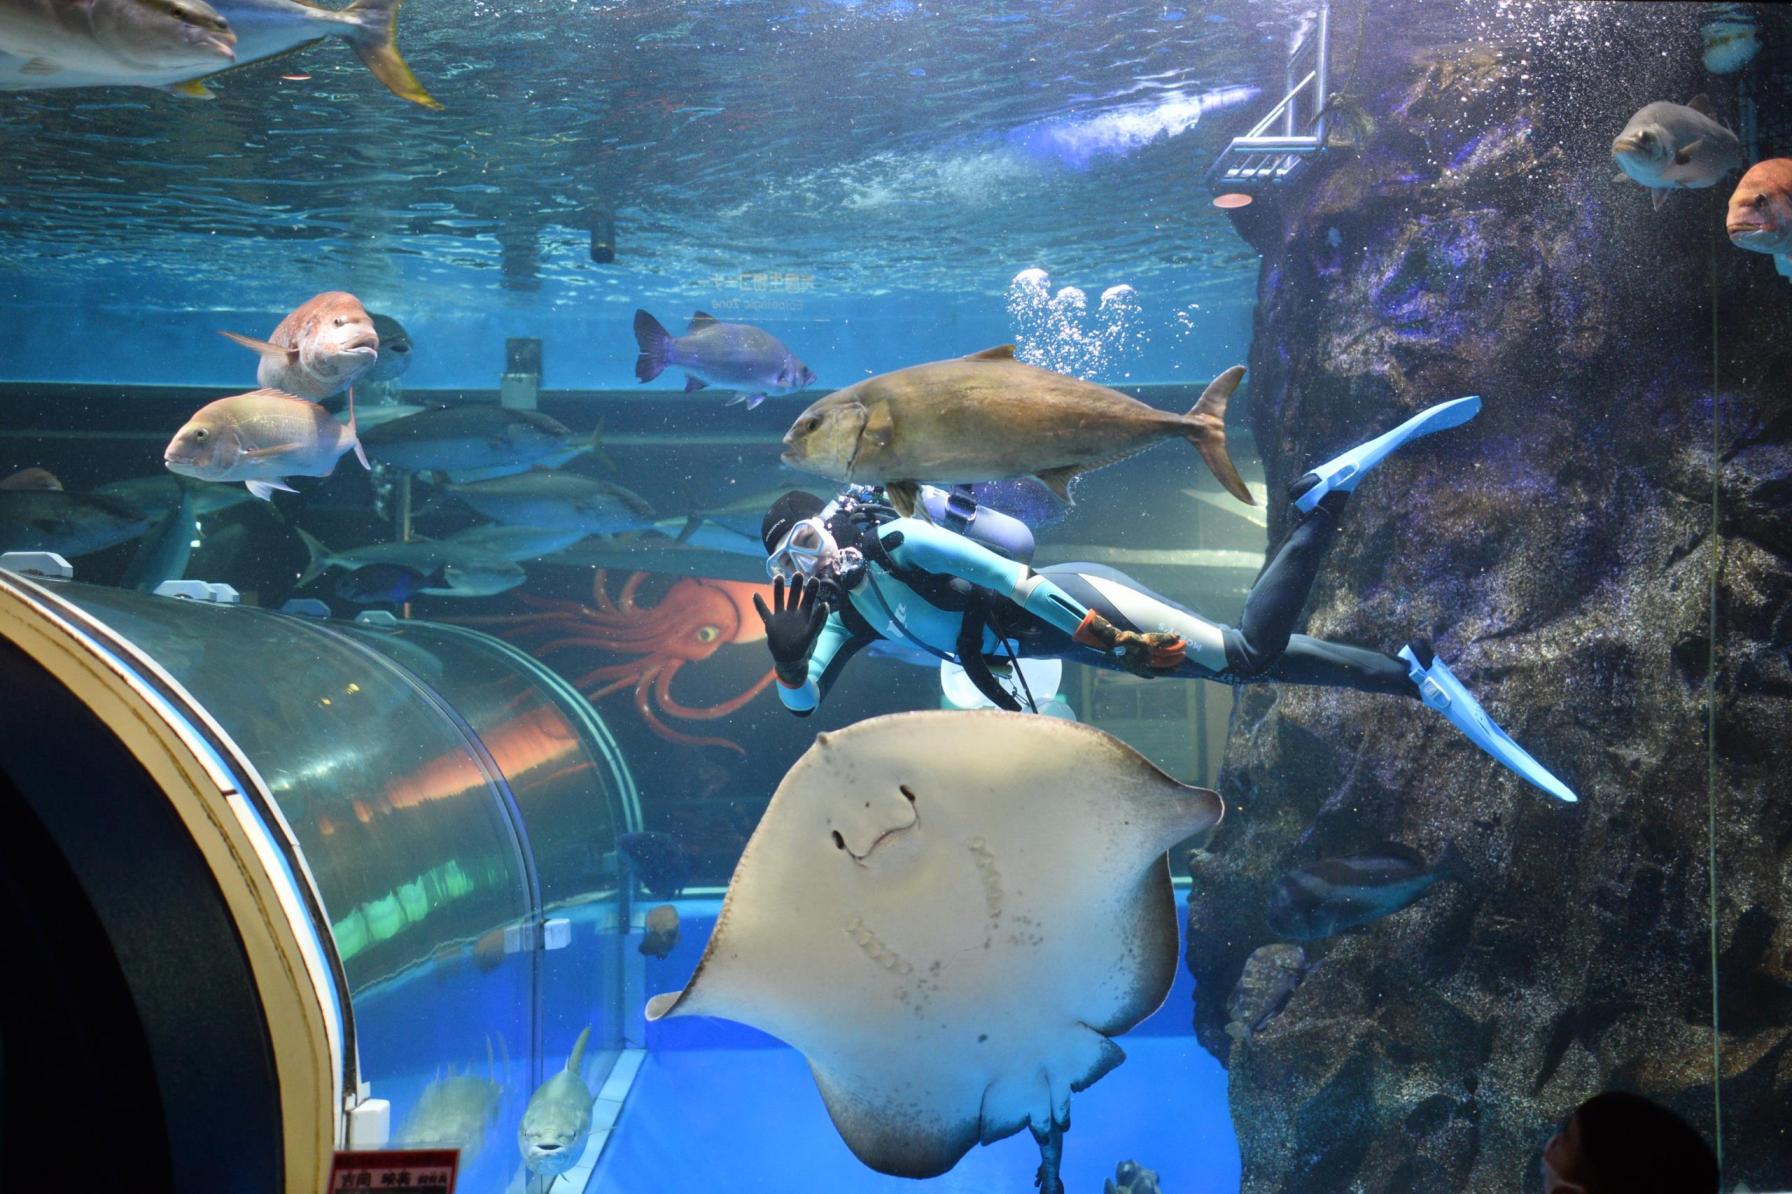 Uozu Aquarium: the longest-operating aquarium in Japan-0